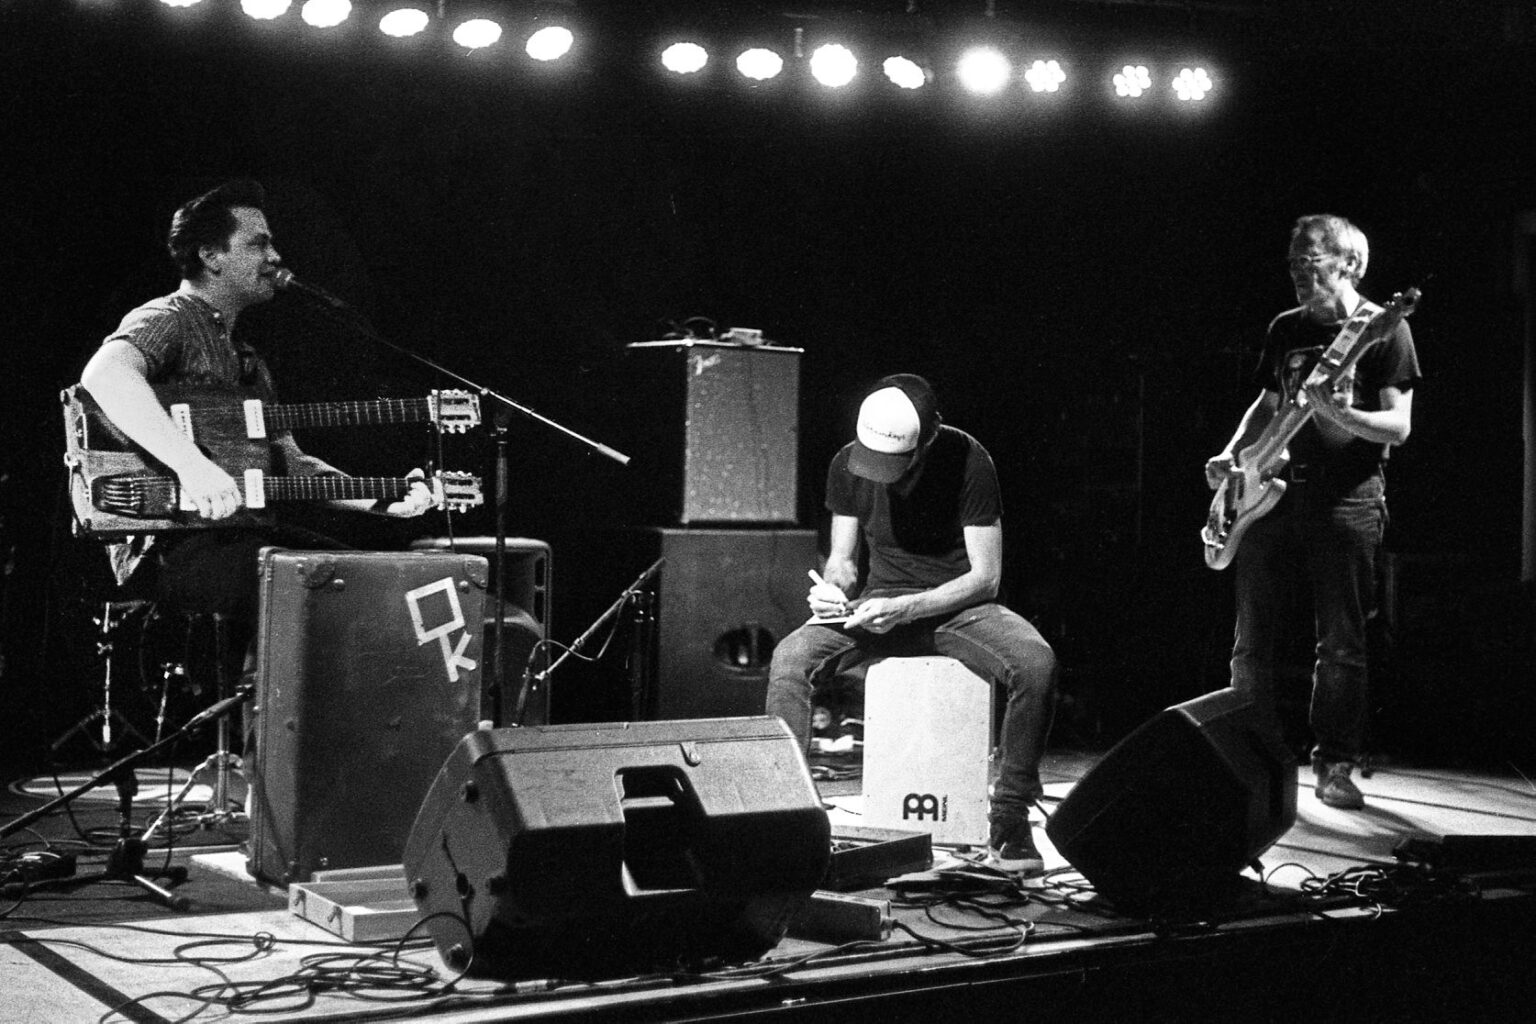 Muzikanten spelen live op podium in zwart-wit.